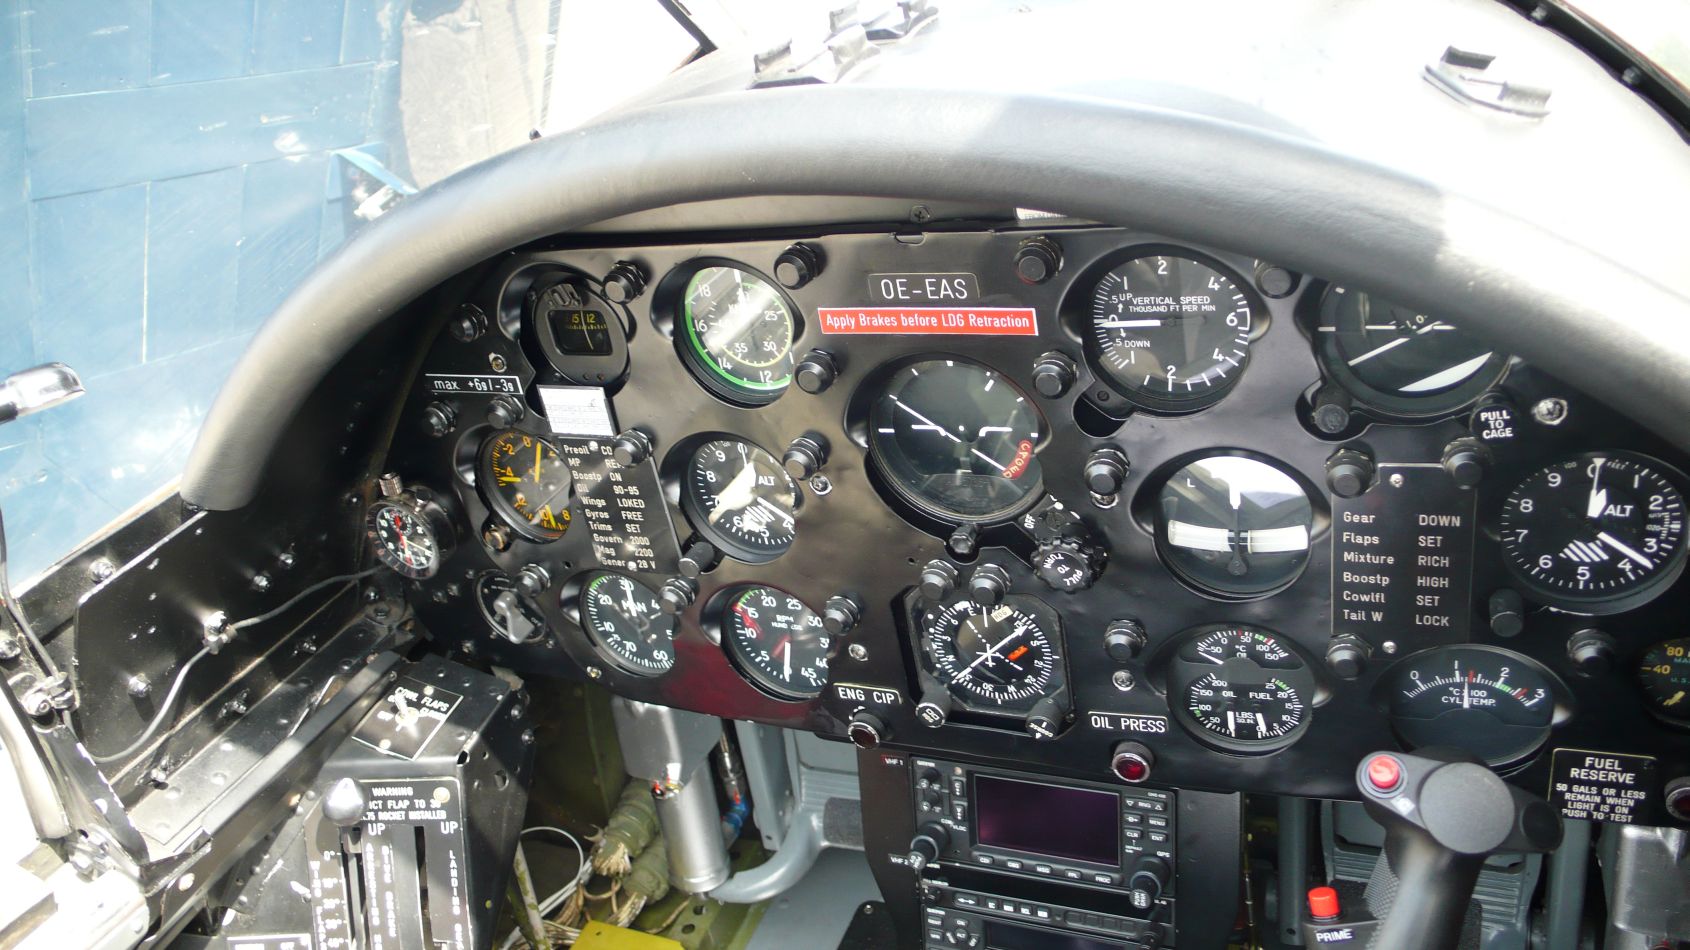 Corsair-cockpit, sok felirattal, modern navigációval és transzponderrel